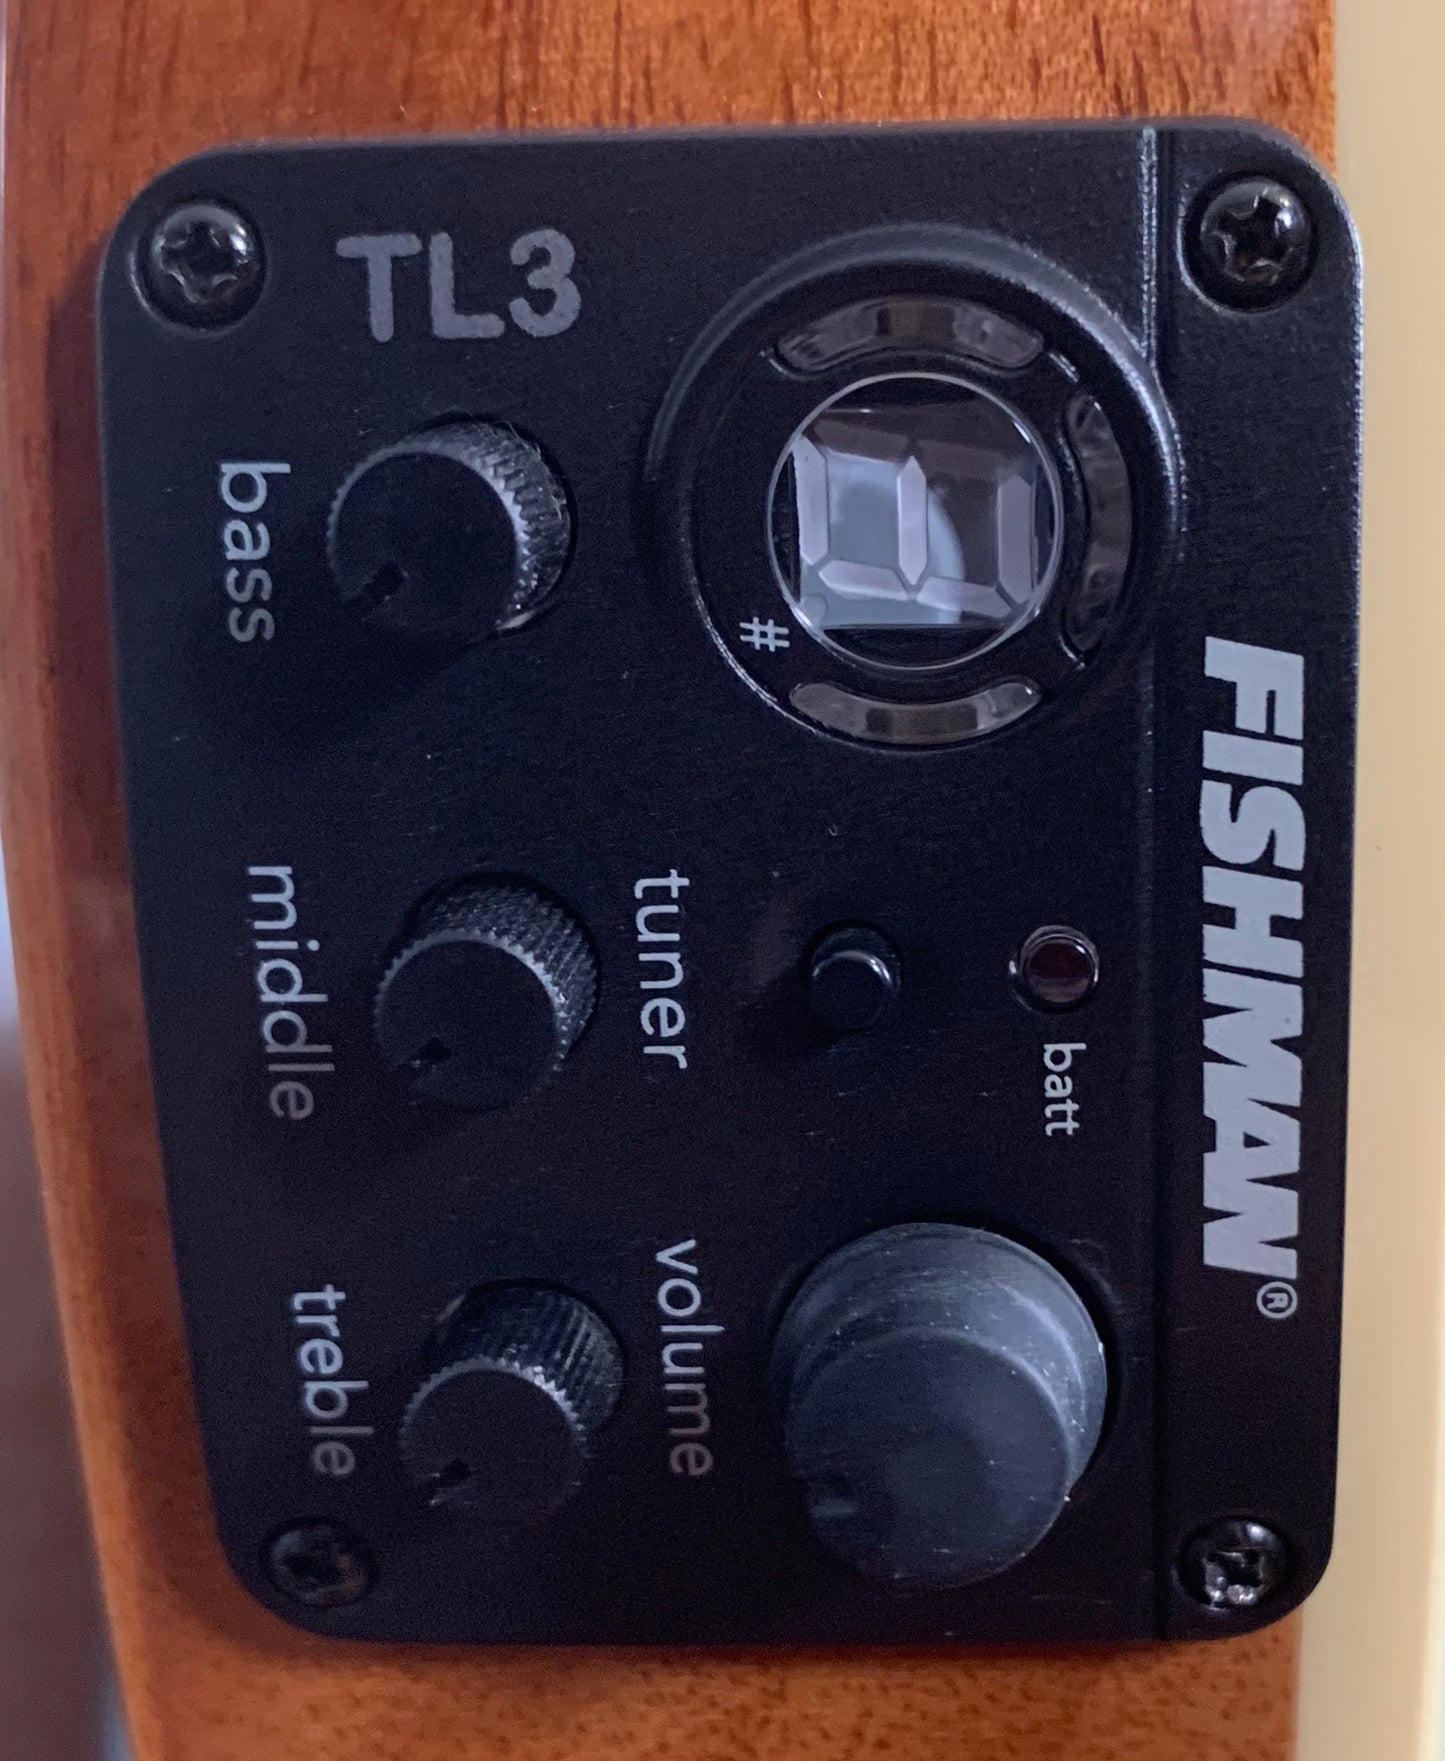 ESP LTD TL-6 Aqua Marine Mist Acoustic Electric Guitar & Case TL6FMAQMB #1799